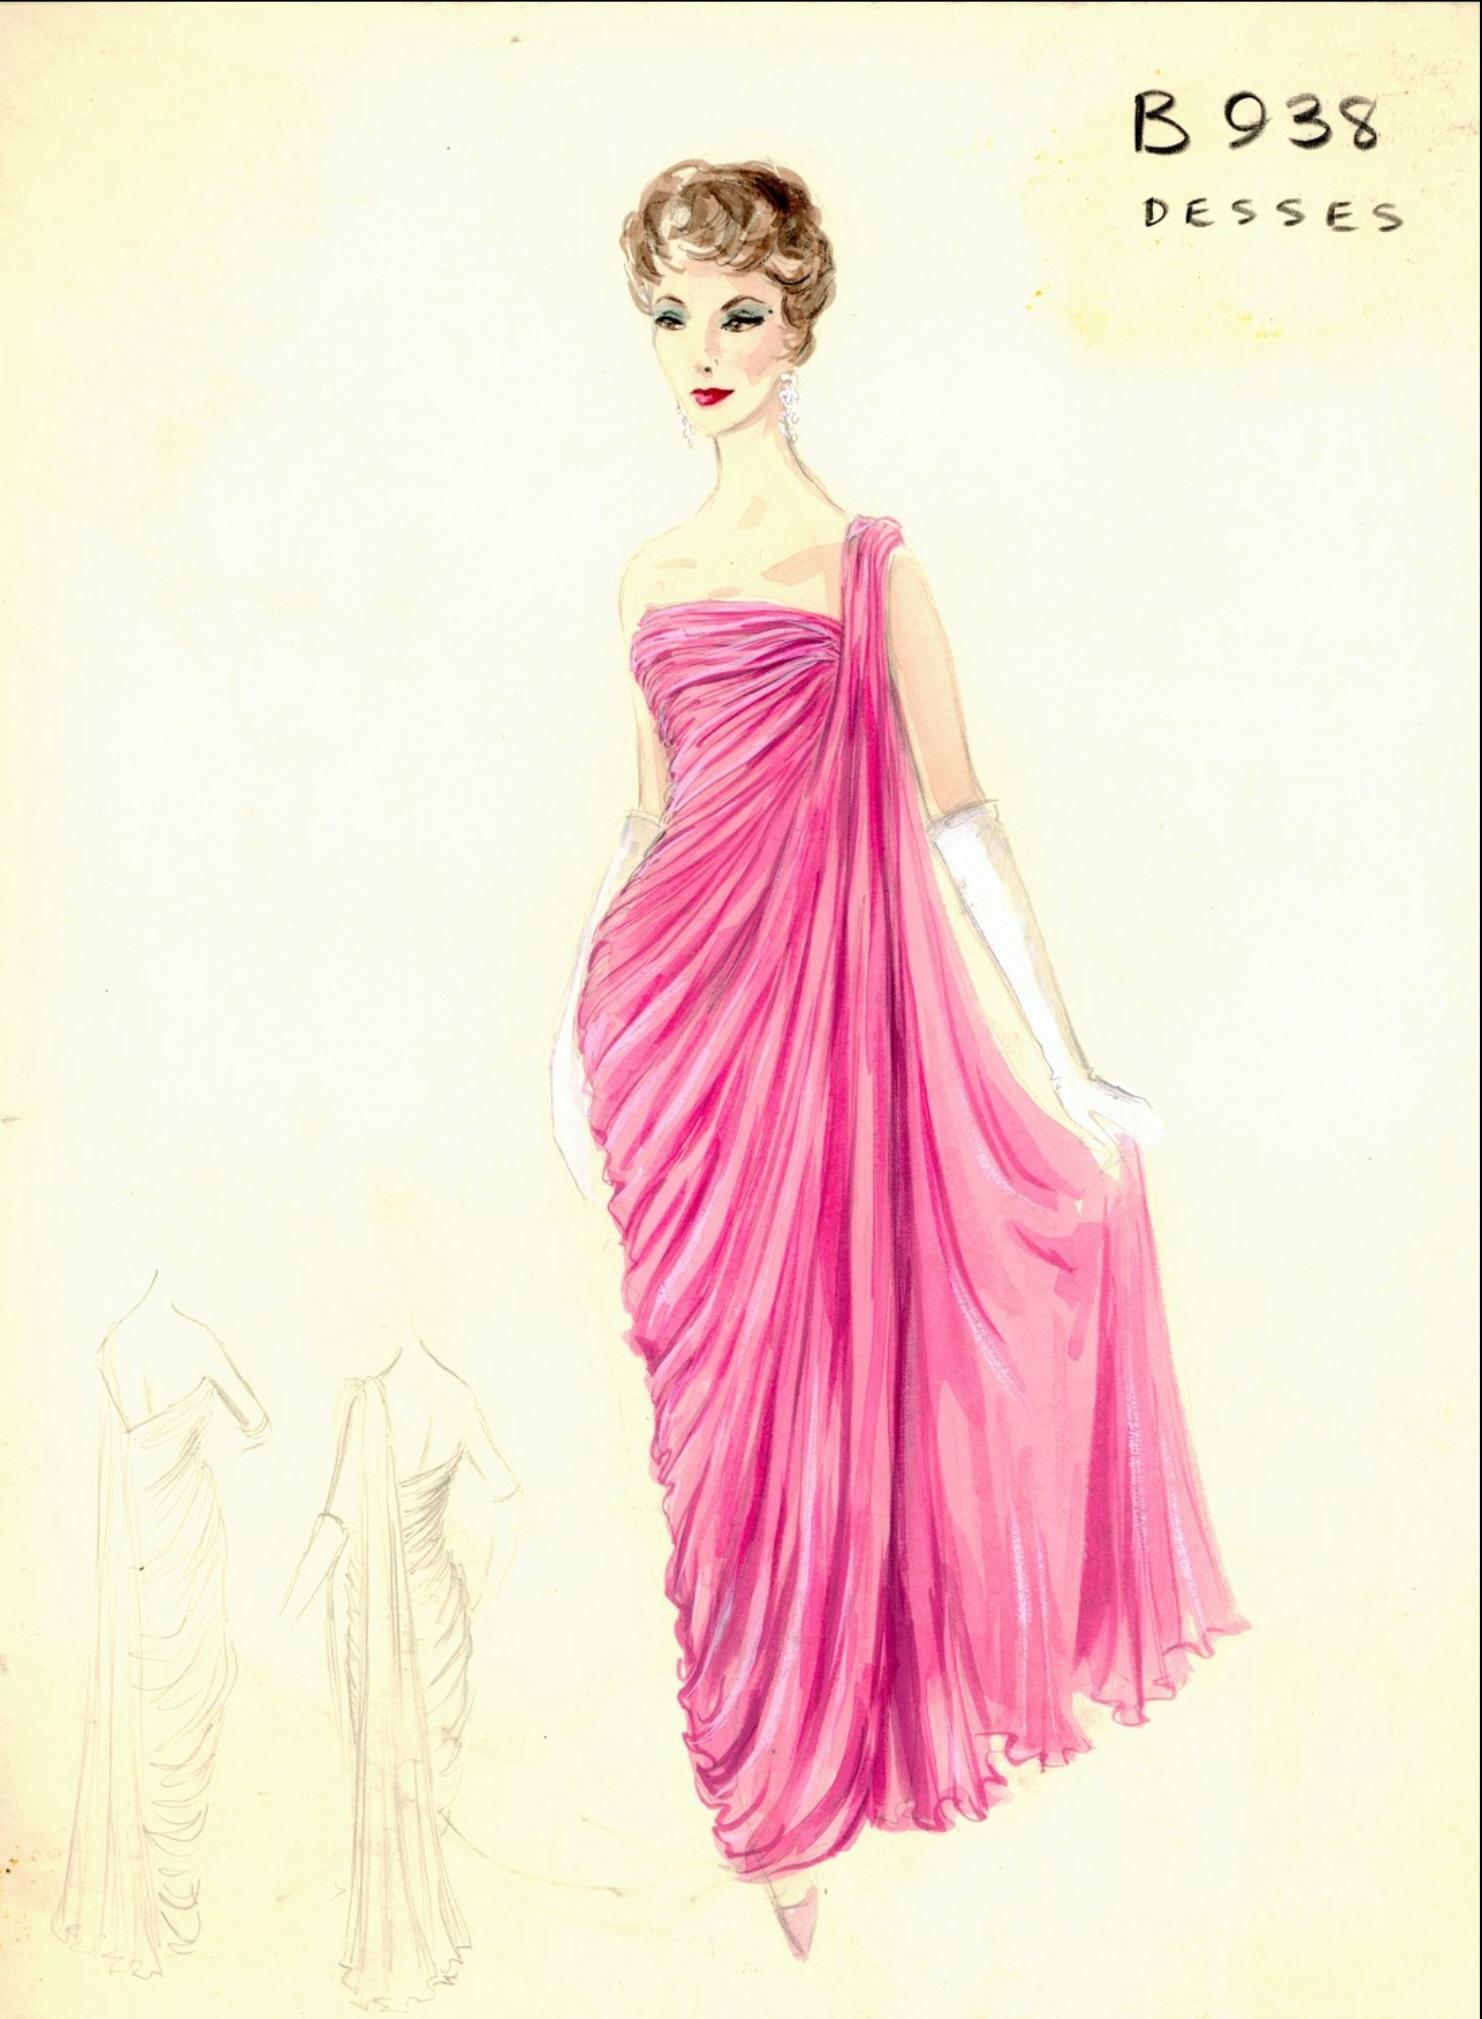 Ein absolut atemberaubendes, gut dokumentiertes, Jean Dessès zugeschriebenes, blassrosa gerüschtes Seiden-Chiffon-Göttinnenkleid aus seiner Frühjahr/Sommer-Kollektion von 1958. Dieses unglaubliche Kleid wurde bei Gandini verkauft, einem